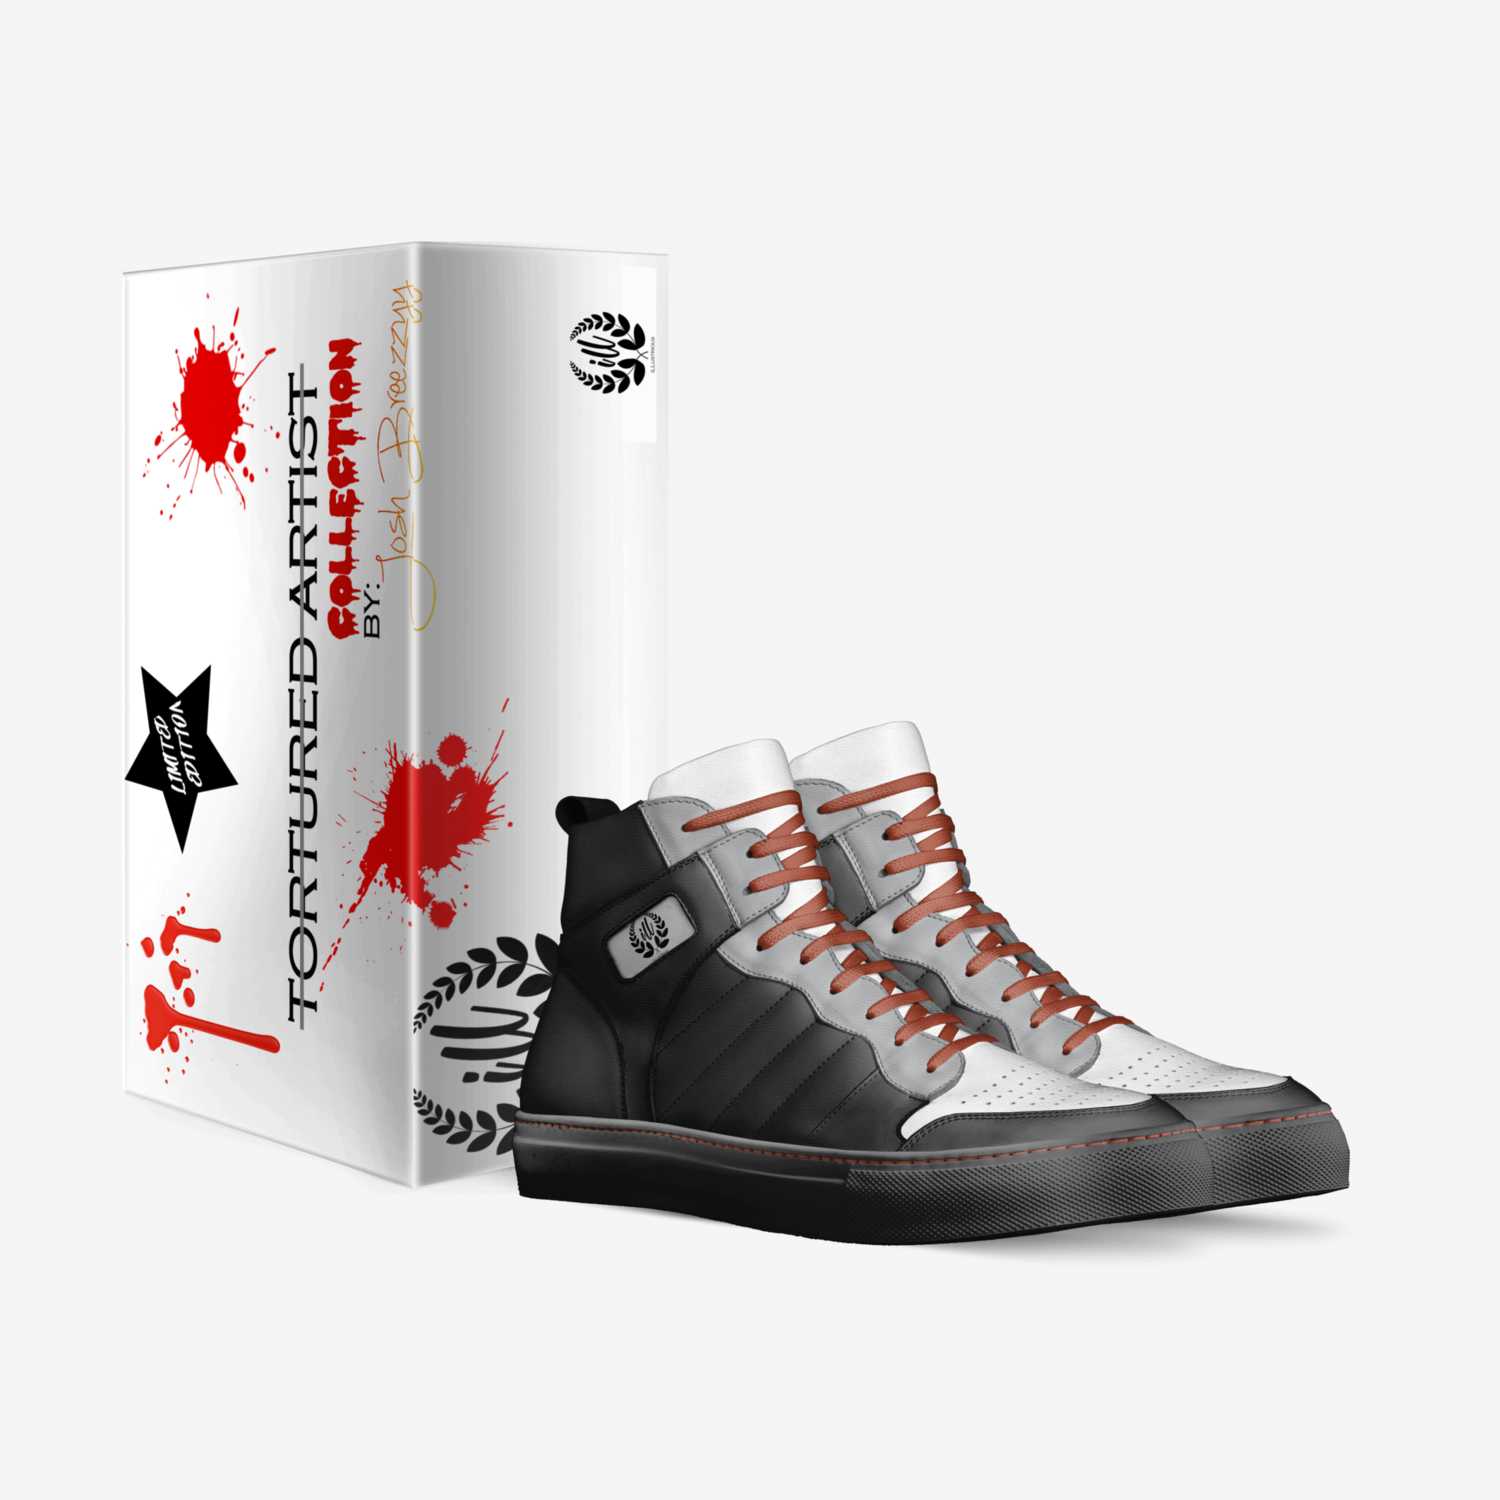 iLL custom made in Italy shoes by Josh Breezzyy | Box view